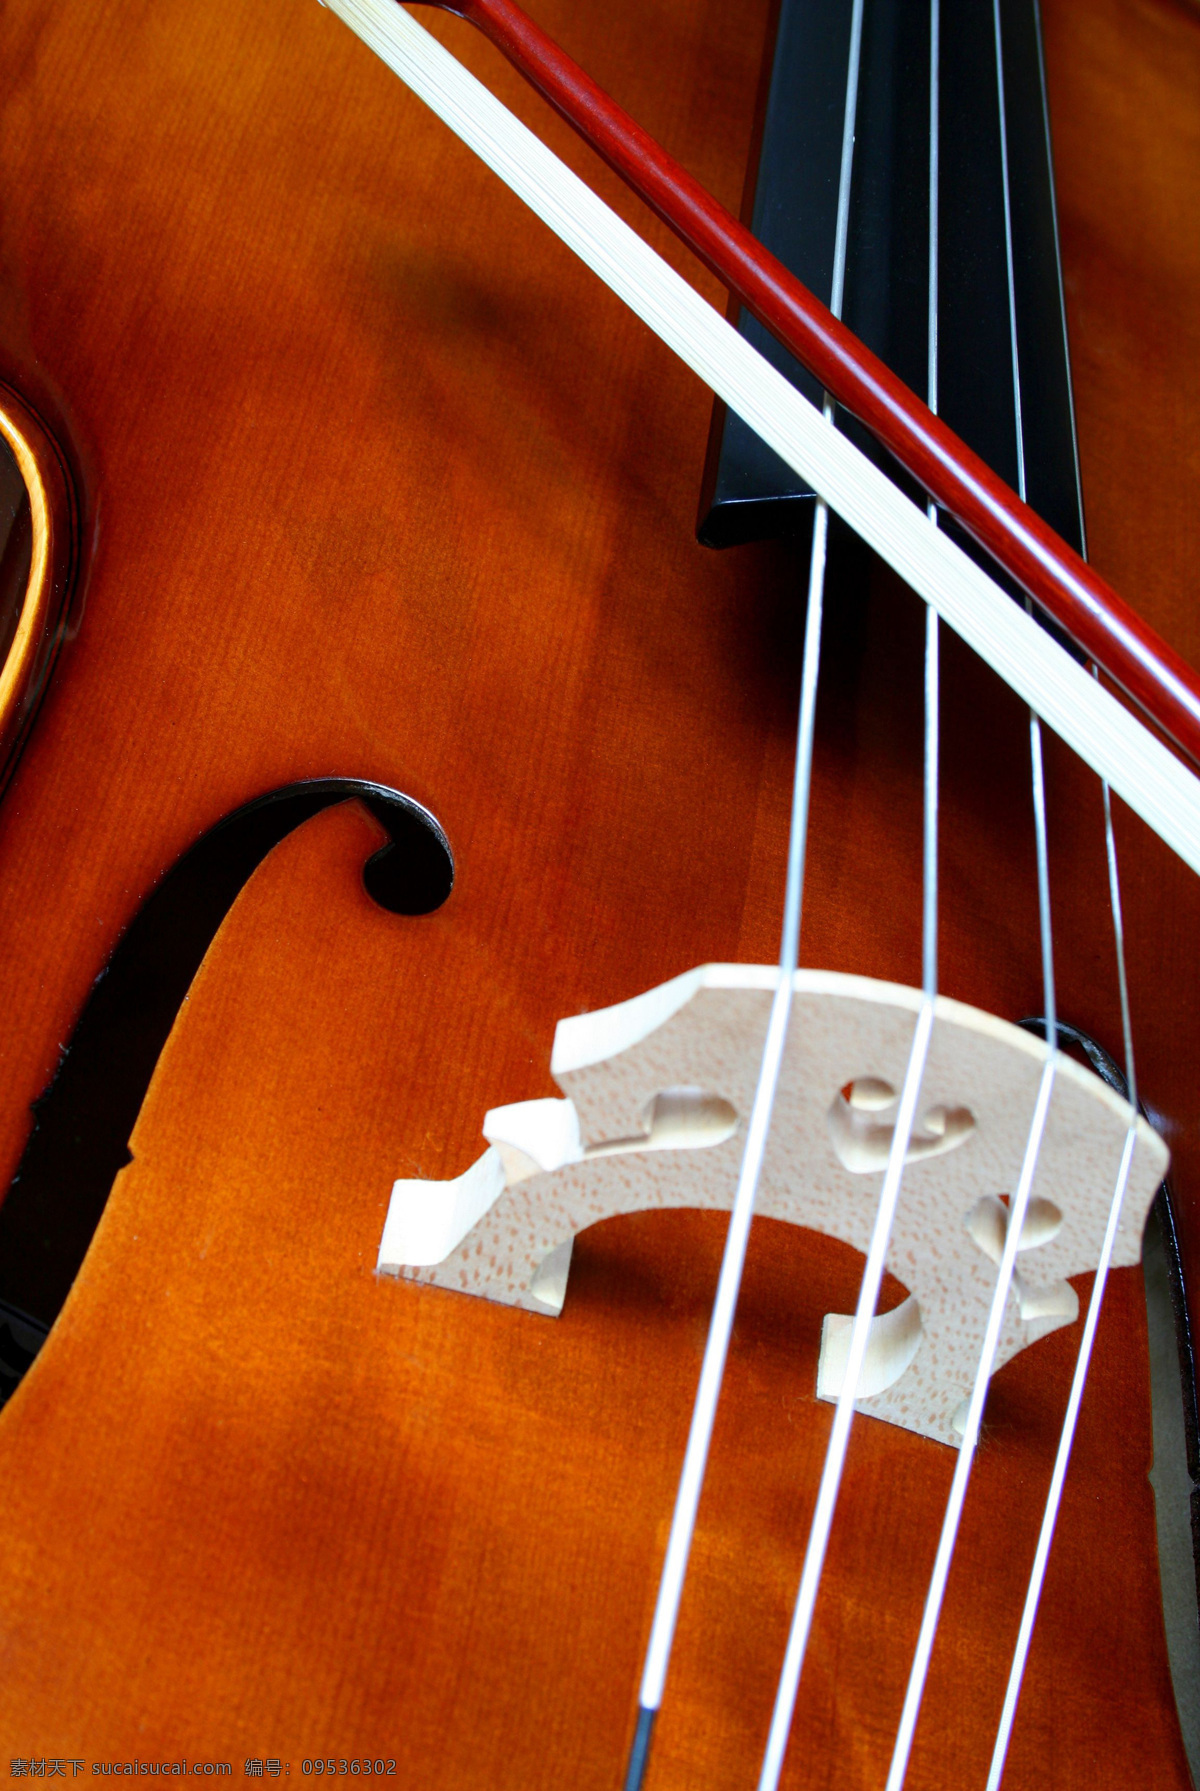 琴弦 音乐 艺术 乐器 弦乐器 小提琴 文化艺术 舞蹈音乐 摄影图库